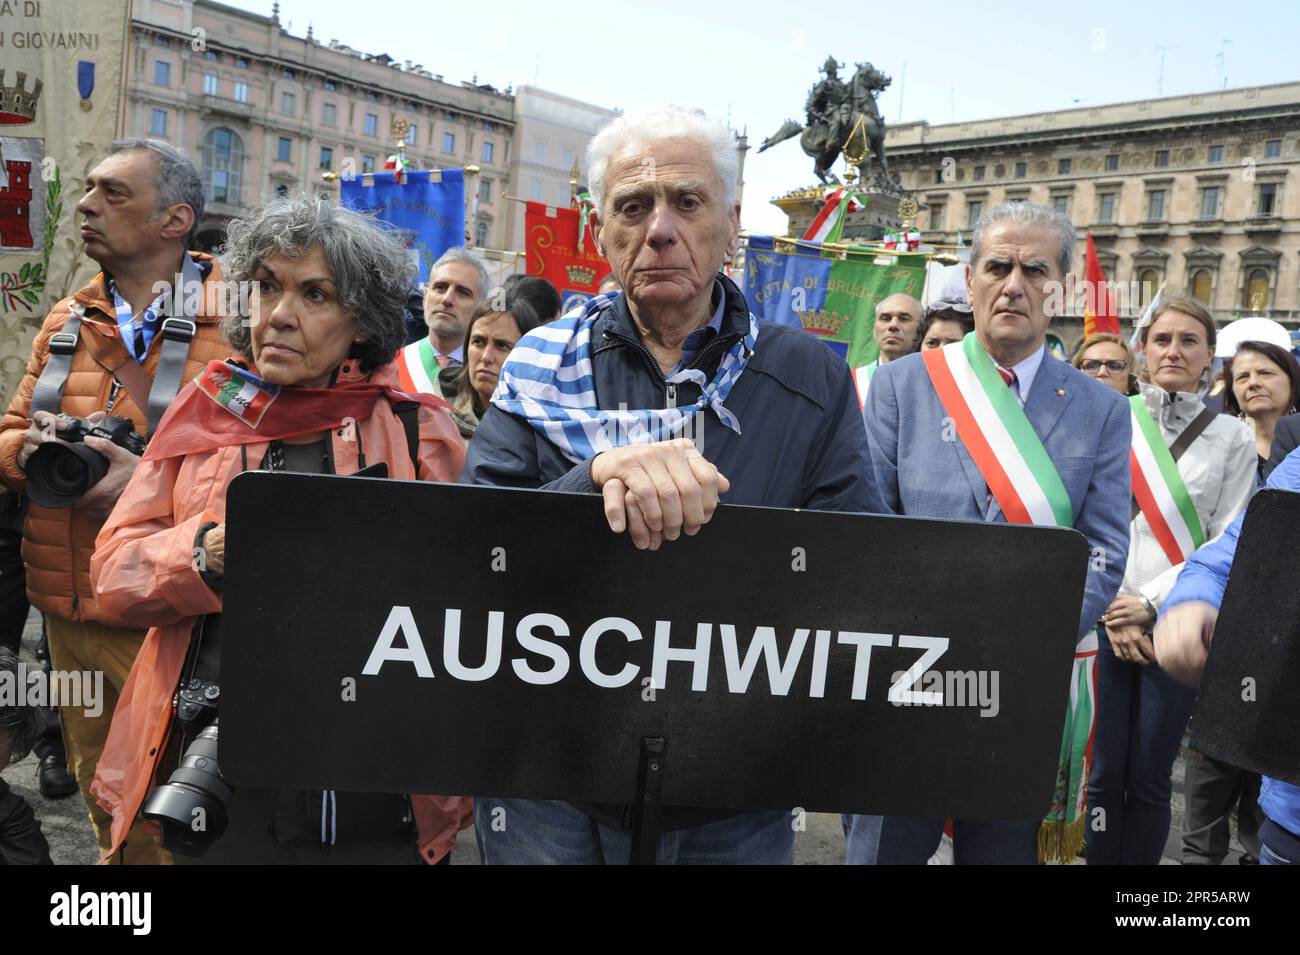 - Mailand, Demonstration vom 25. April, Jahrestag der Befreiung Italiens vom Nazifaschismus - Milano, manifestazione del 25 aprile, anniversario della Liberazione dell'Italia dal nazifascismo Stockfoto